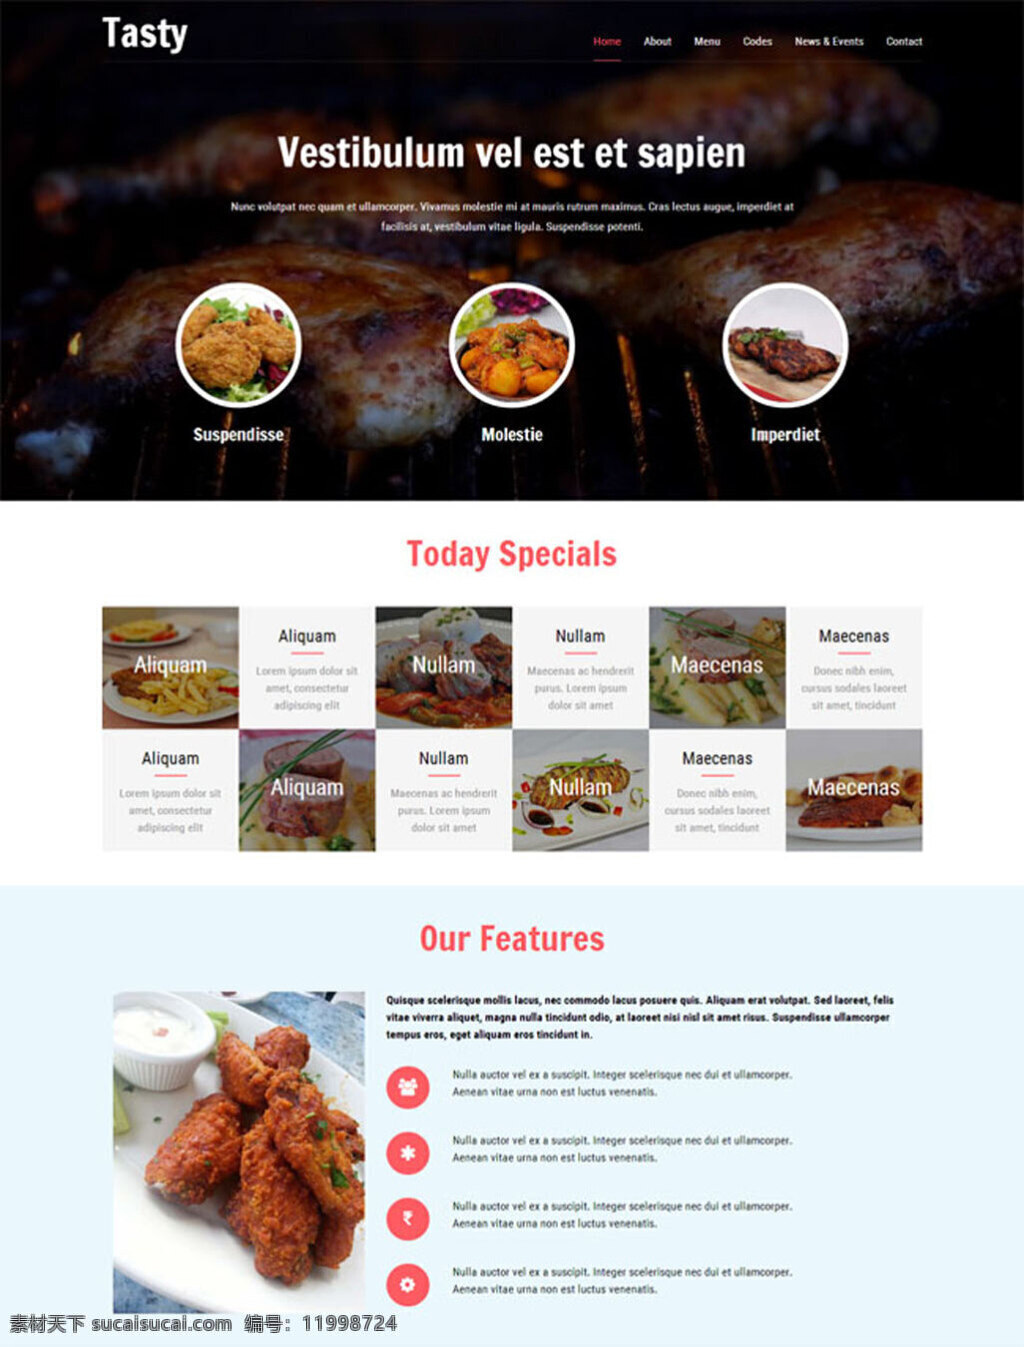 加盟店 网站 模板 烧烤店 html 餐饮烧烤 网站模板 网页素材